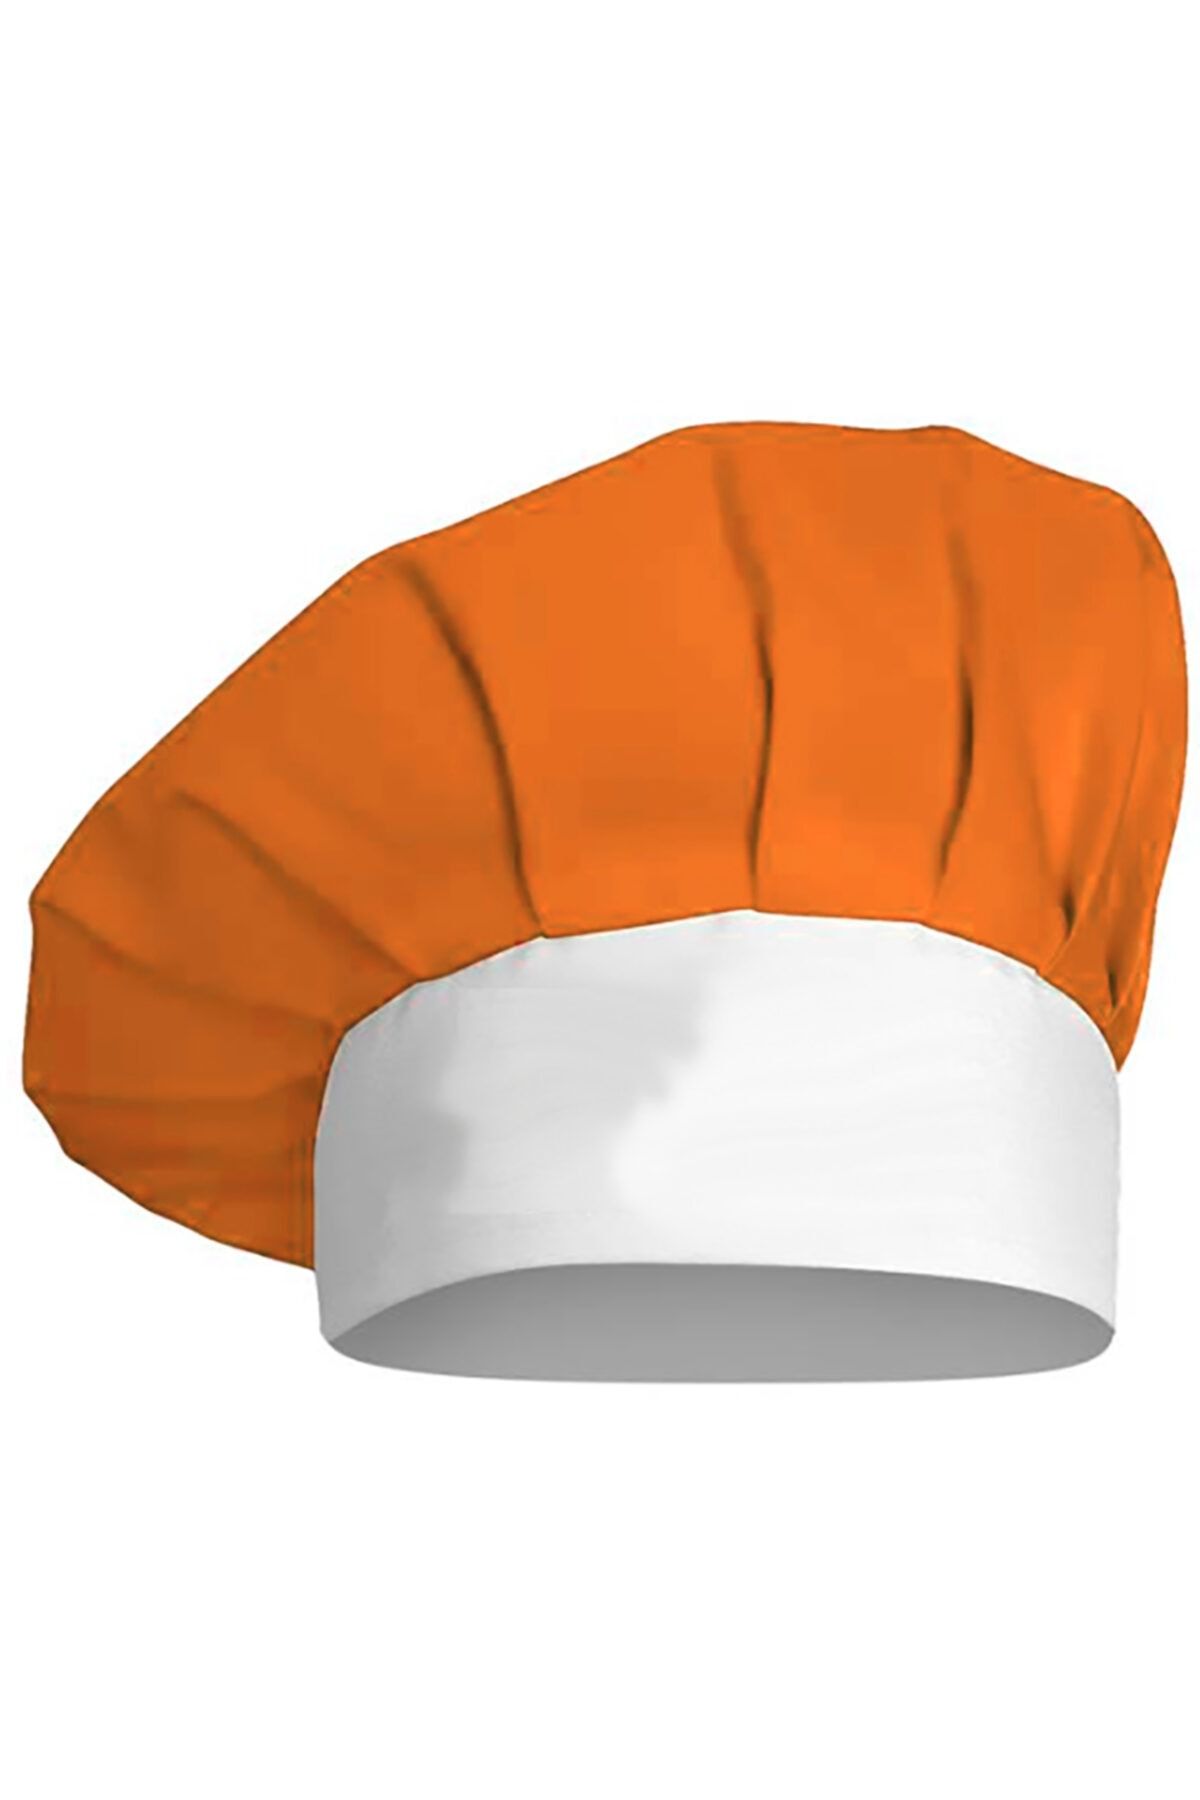 medusaforma Turuncu Beyaz Aşçı Şapkası Mutfak Şef Mantar Kep